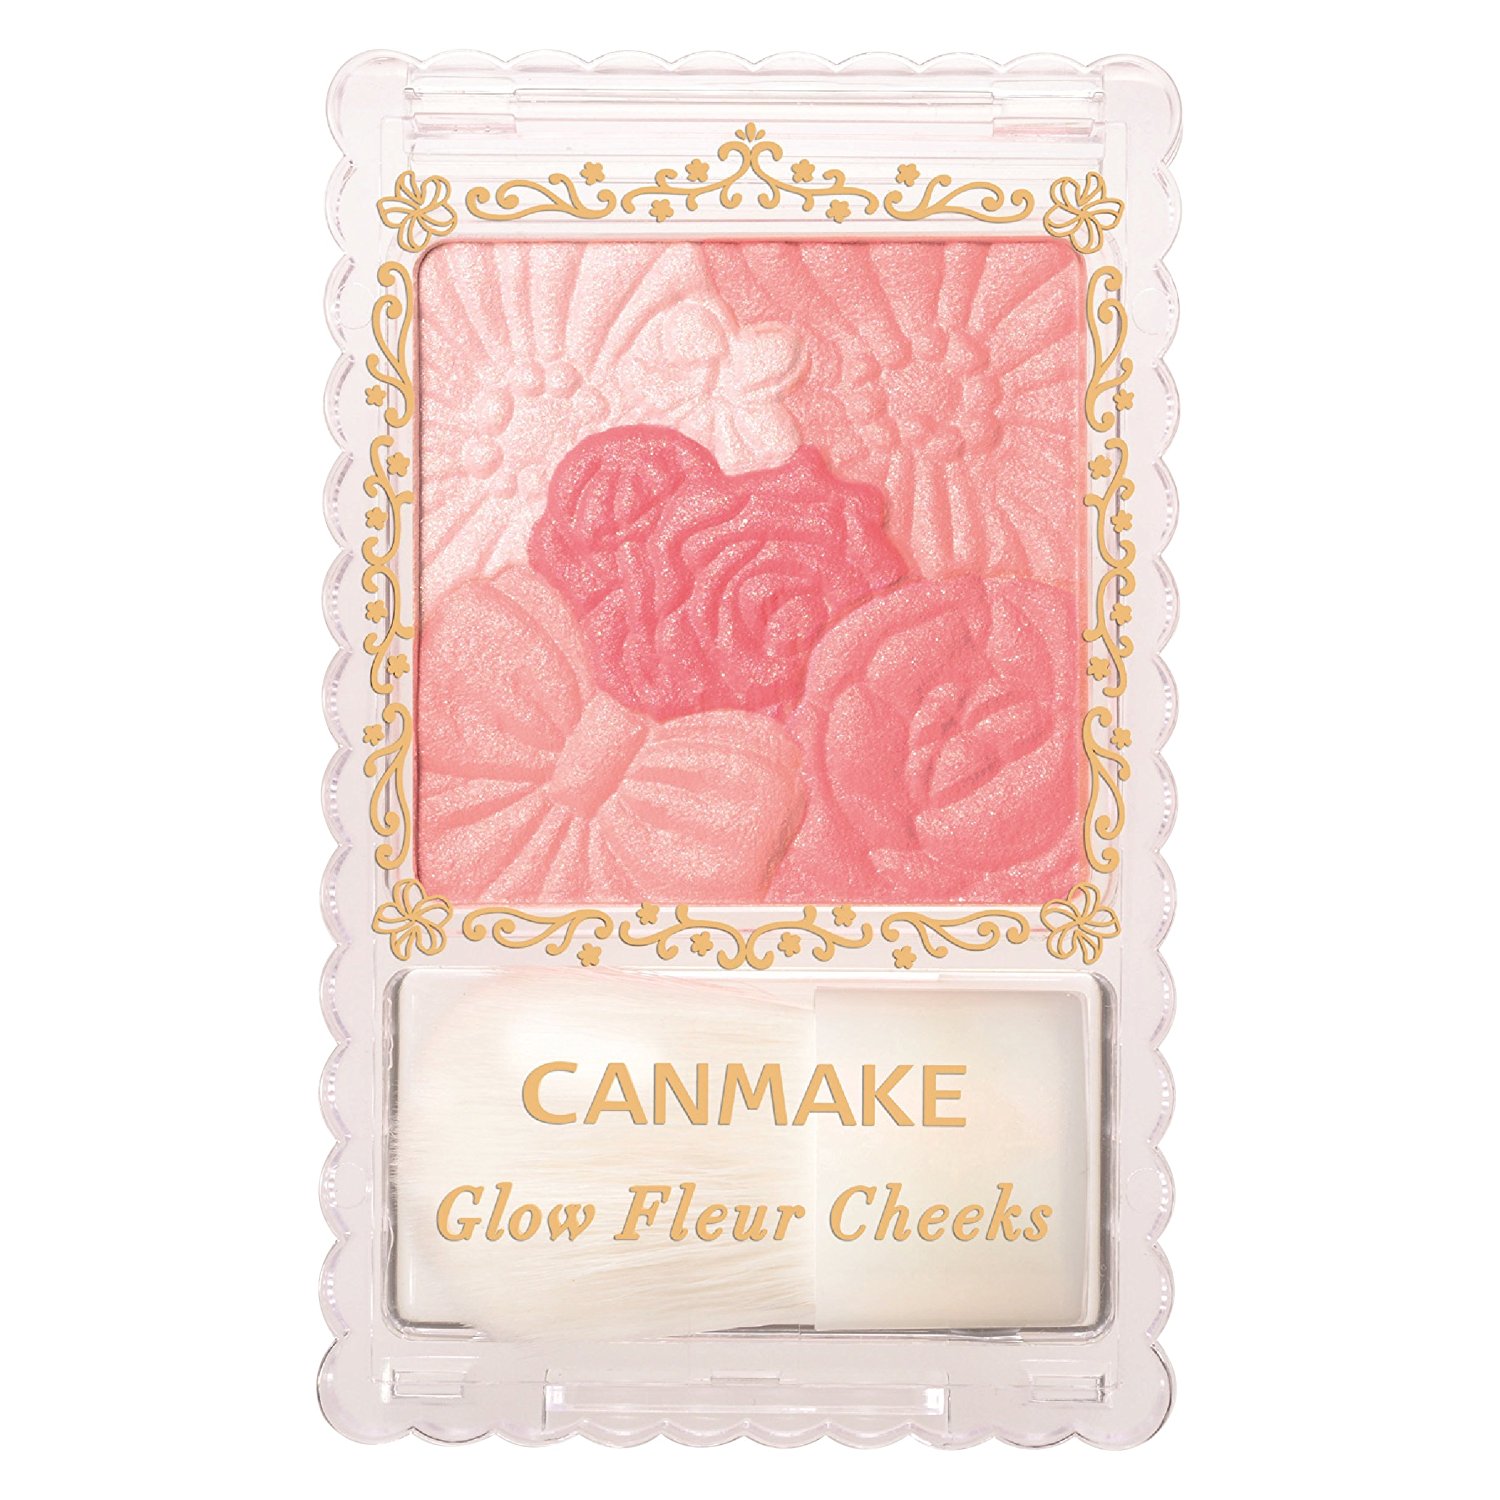 Ma-Hong-Canmake-Glow-Fleur-Cheeks